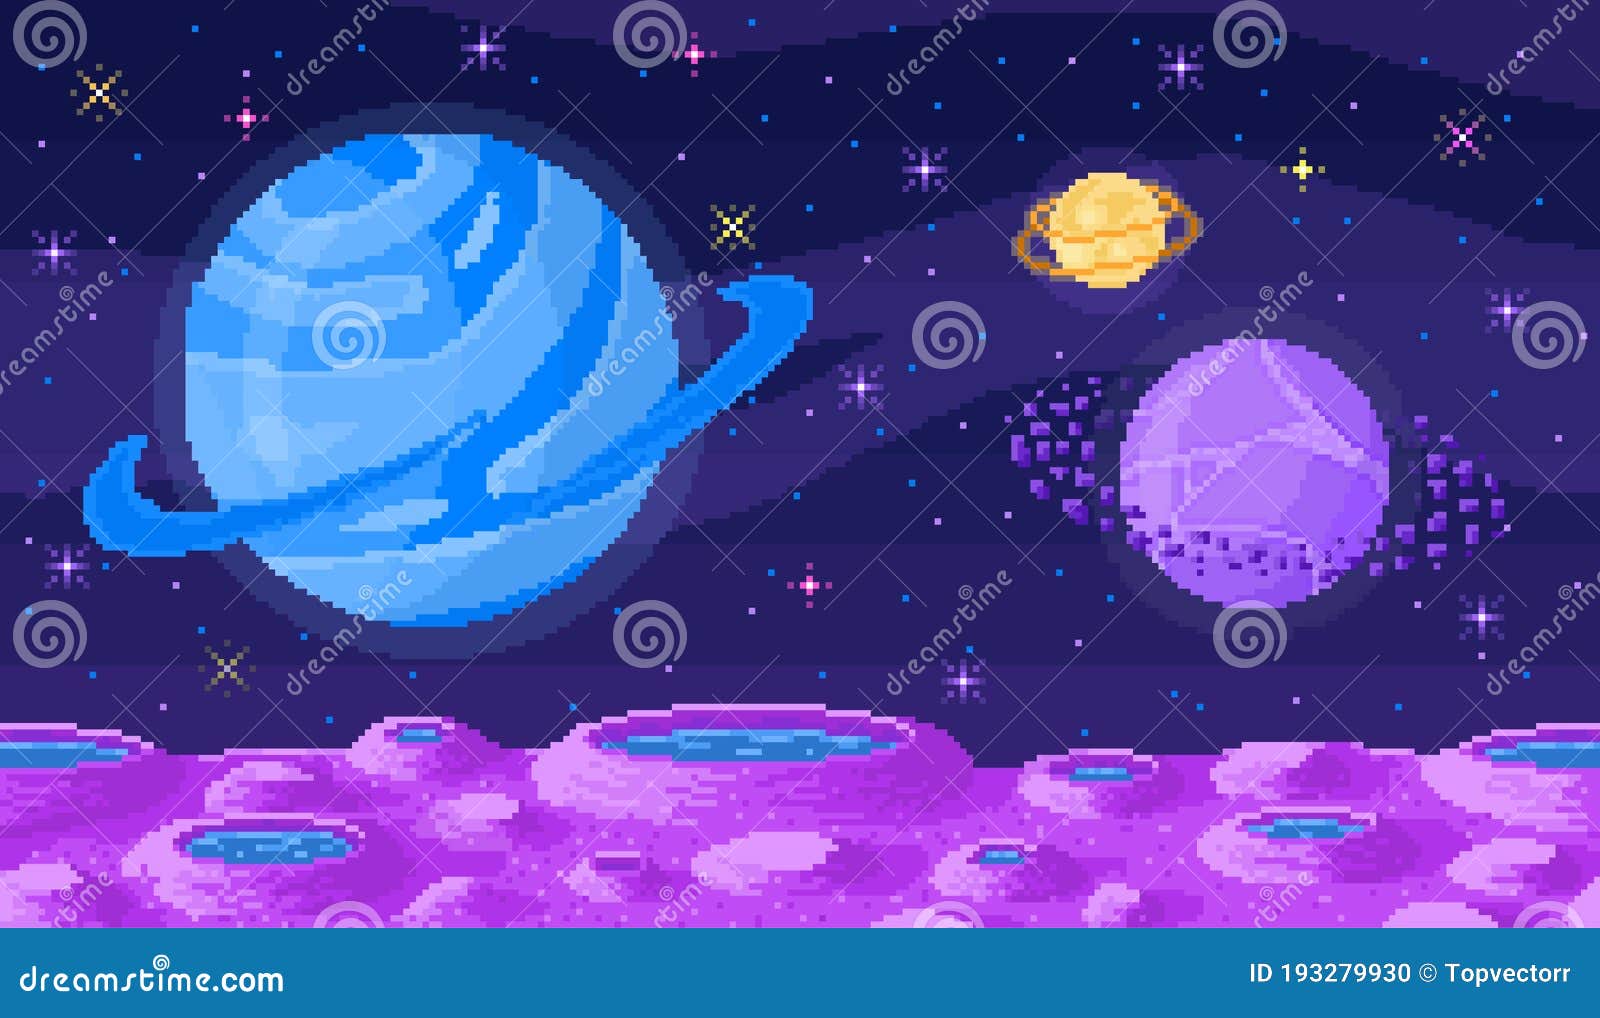 Với hành tinh không gian pixel, bạn sẽ được đưa đến khung cảnh đẹp như trong mơ. Sự kết hợp giữa không gian khác biệt của hành tinh và nghệ thuật pixel sẽ đưa bạn đến một trải nghiệm đầy sáng tạo và độc đáo. Hãy cùng nhìn ngắm hành tinh chưa từng có trên màn hình điện tử.